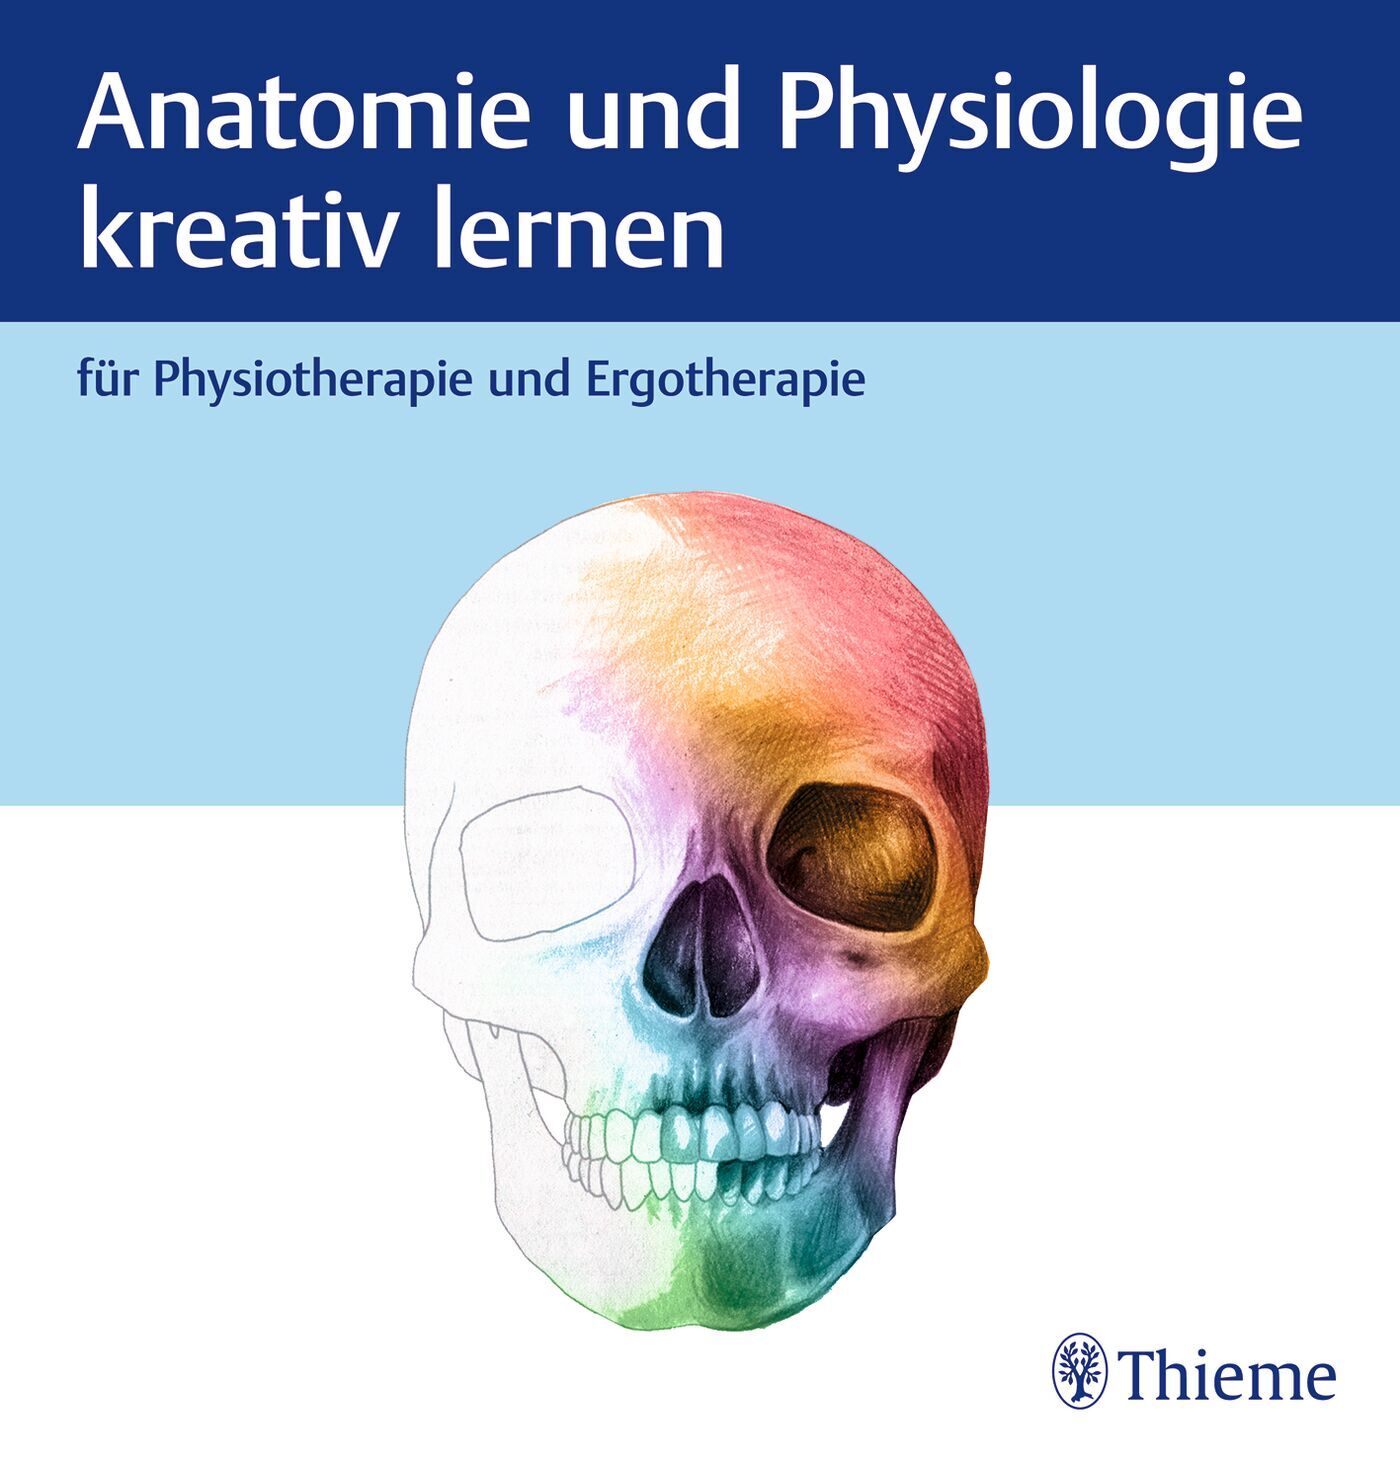 Anatomie und Physiologie kreativ lernen für Physiotherapie und Ergotherapie, 9783132455276